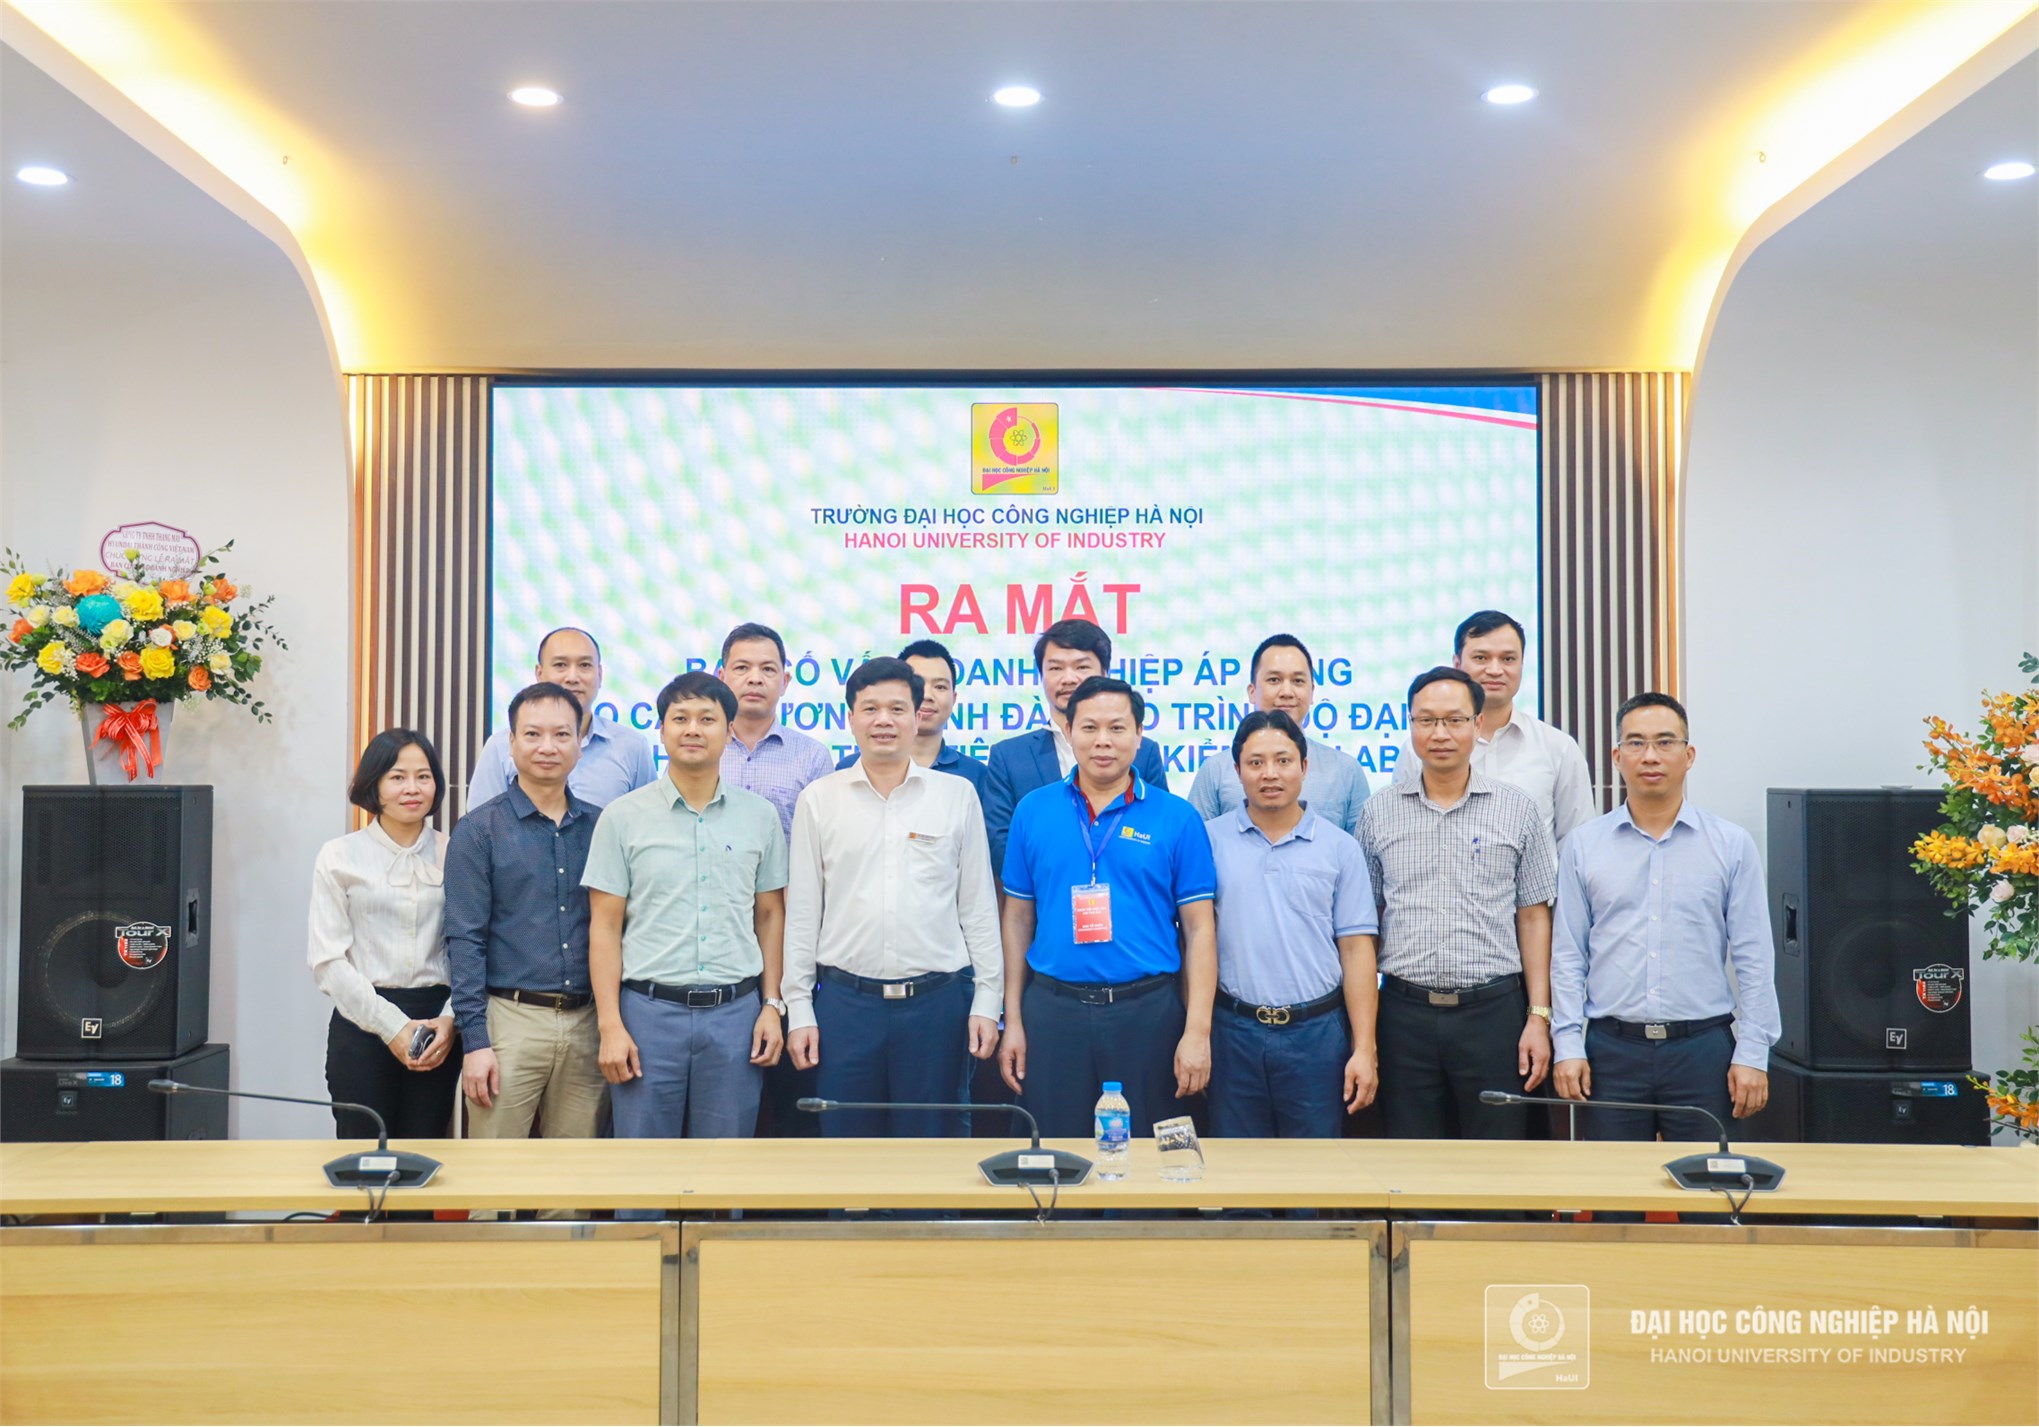 Gần 5.000 cơ hội việc làm cho sinh viên và ra mắt Ban cố vấn doanh nghiệp Trường Đại học Công nghiệp Hà Nội tại Ngày hội việc làm 2023